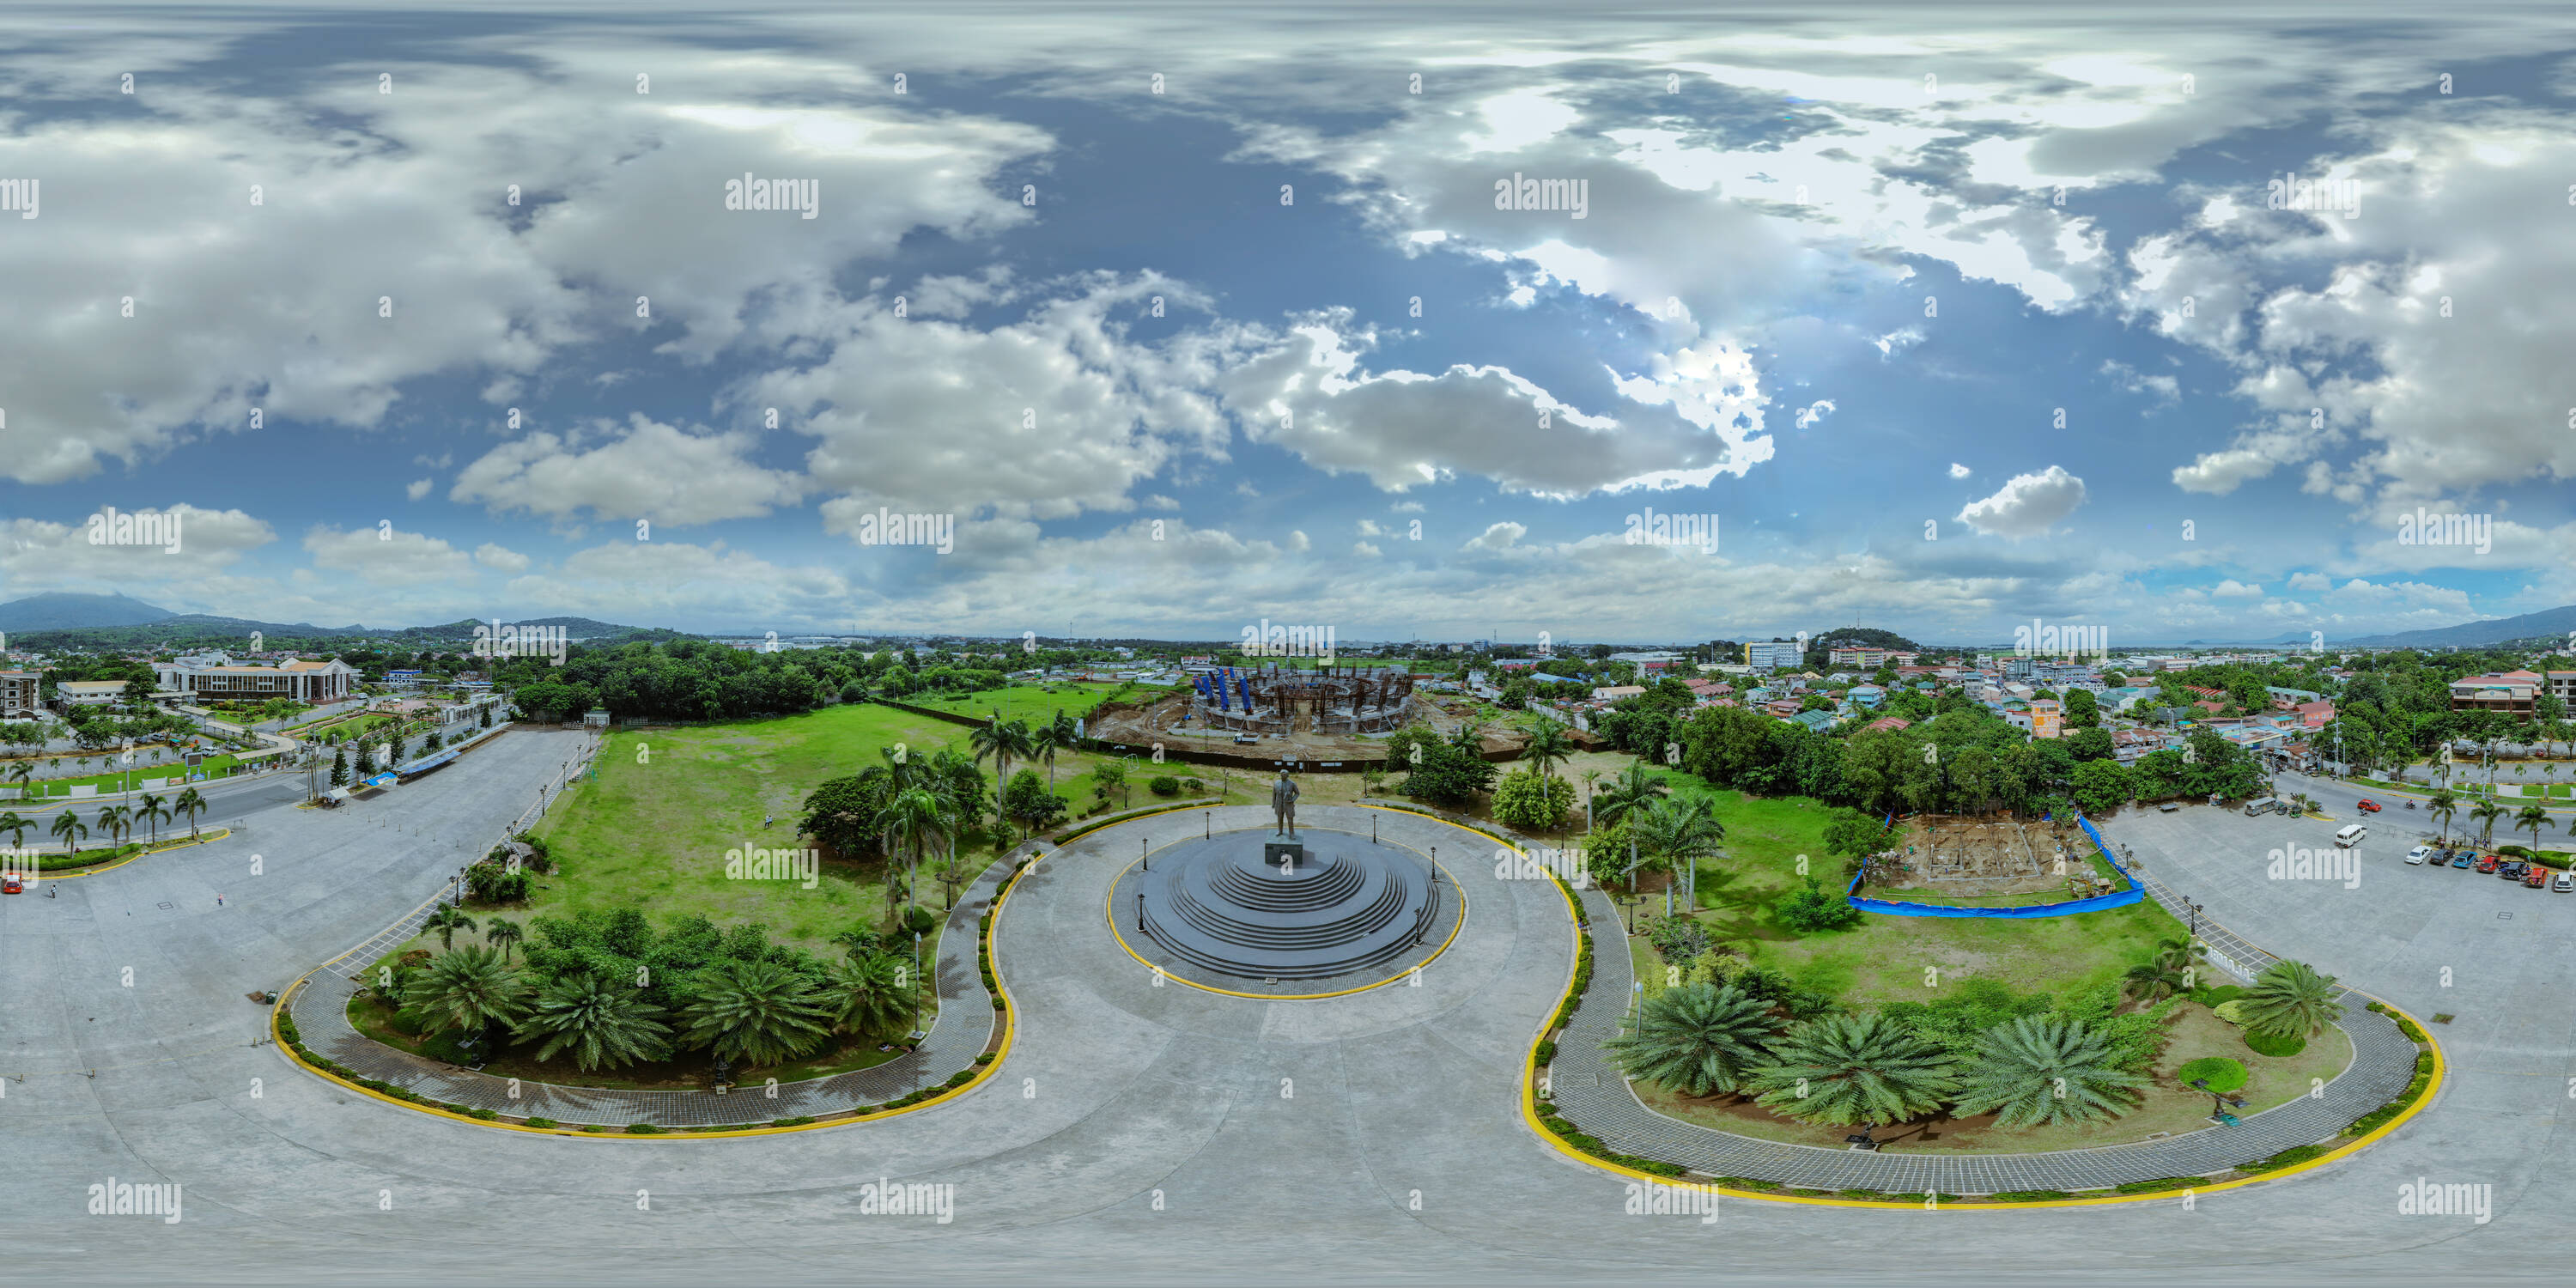 Visualizzazione panoramica a 360 gradi di Vista aerea di Jose Rizal's 22-ft. Statua e la costruzione in corso di Jose Rizal Coliseum presso il Plaza, Calamba City, Laguna